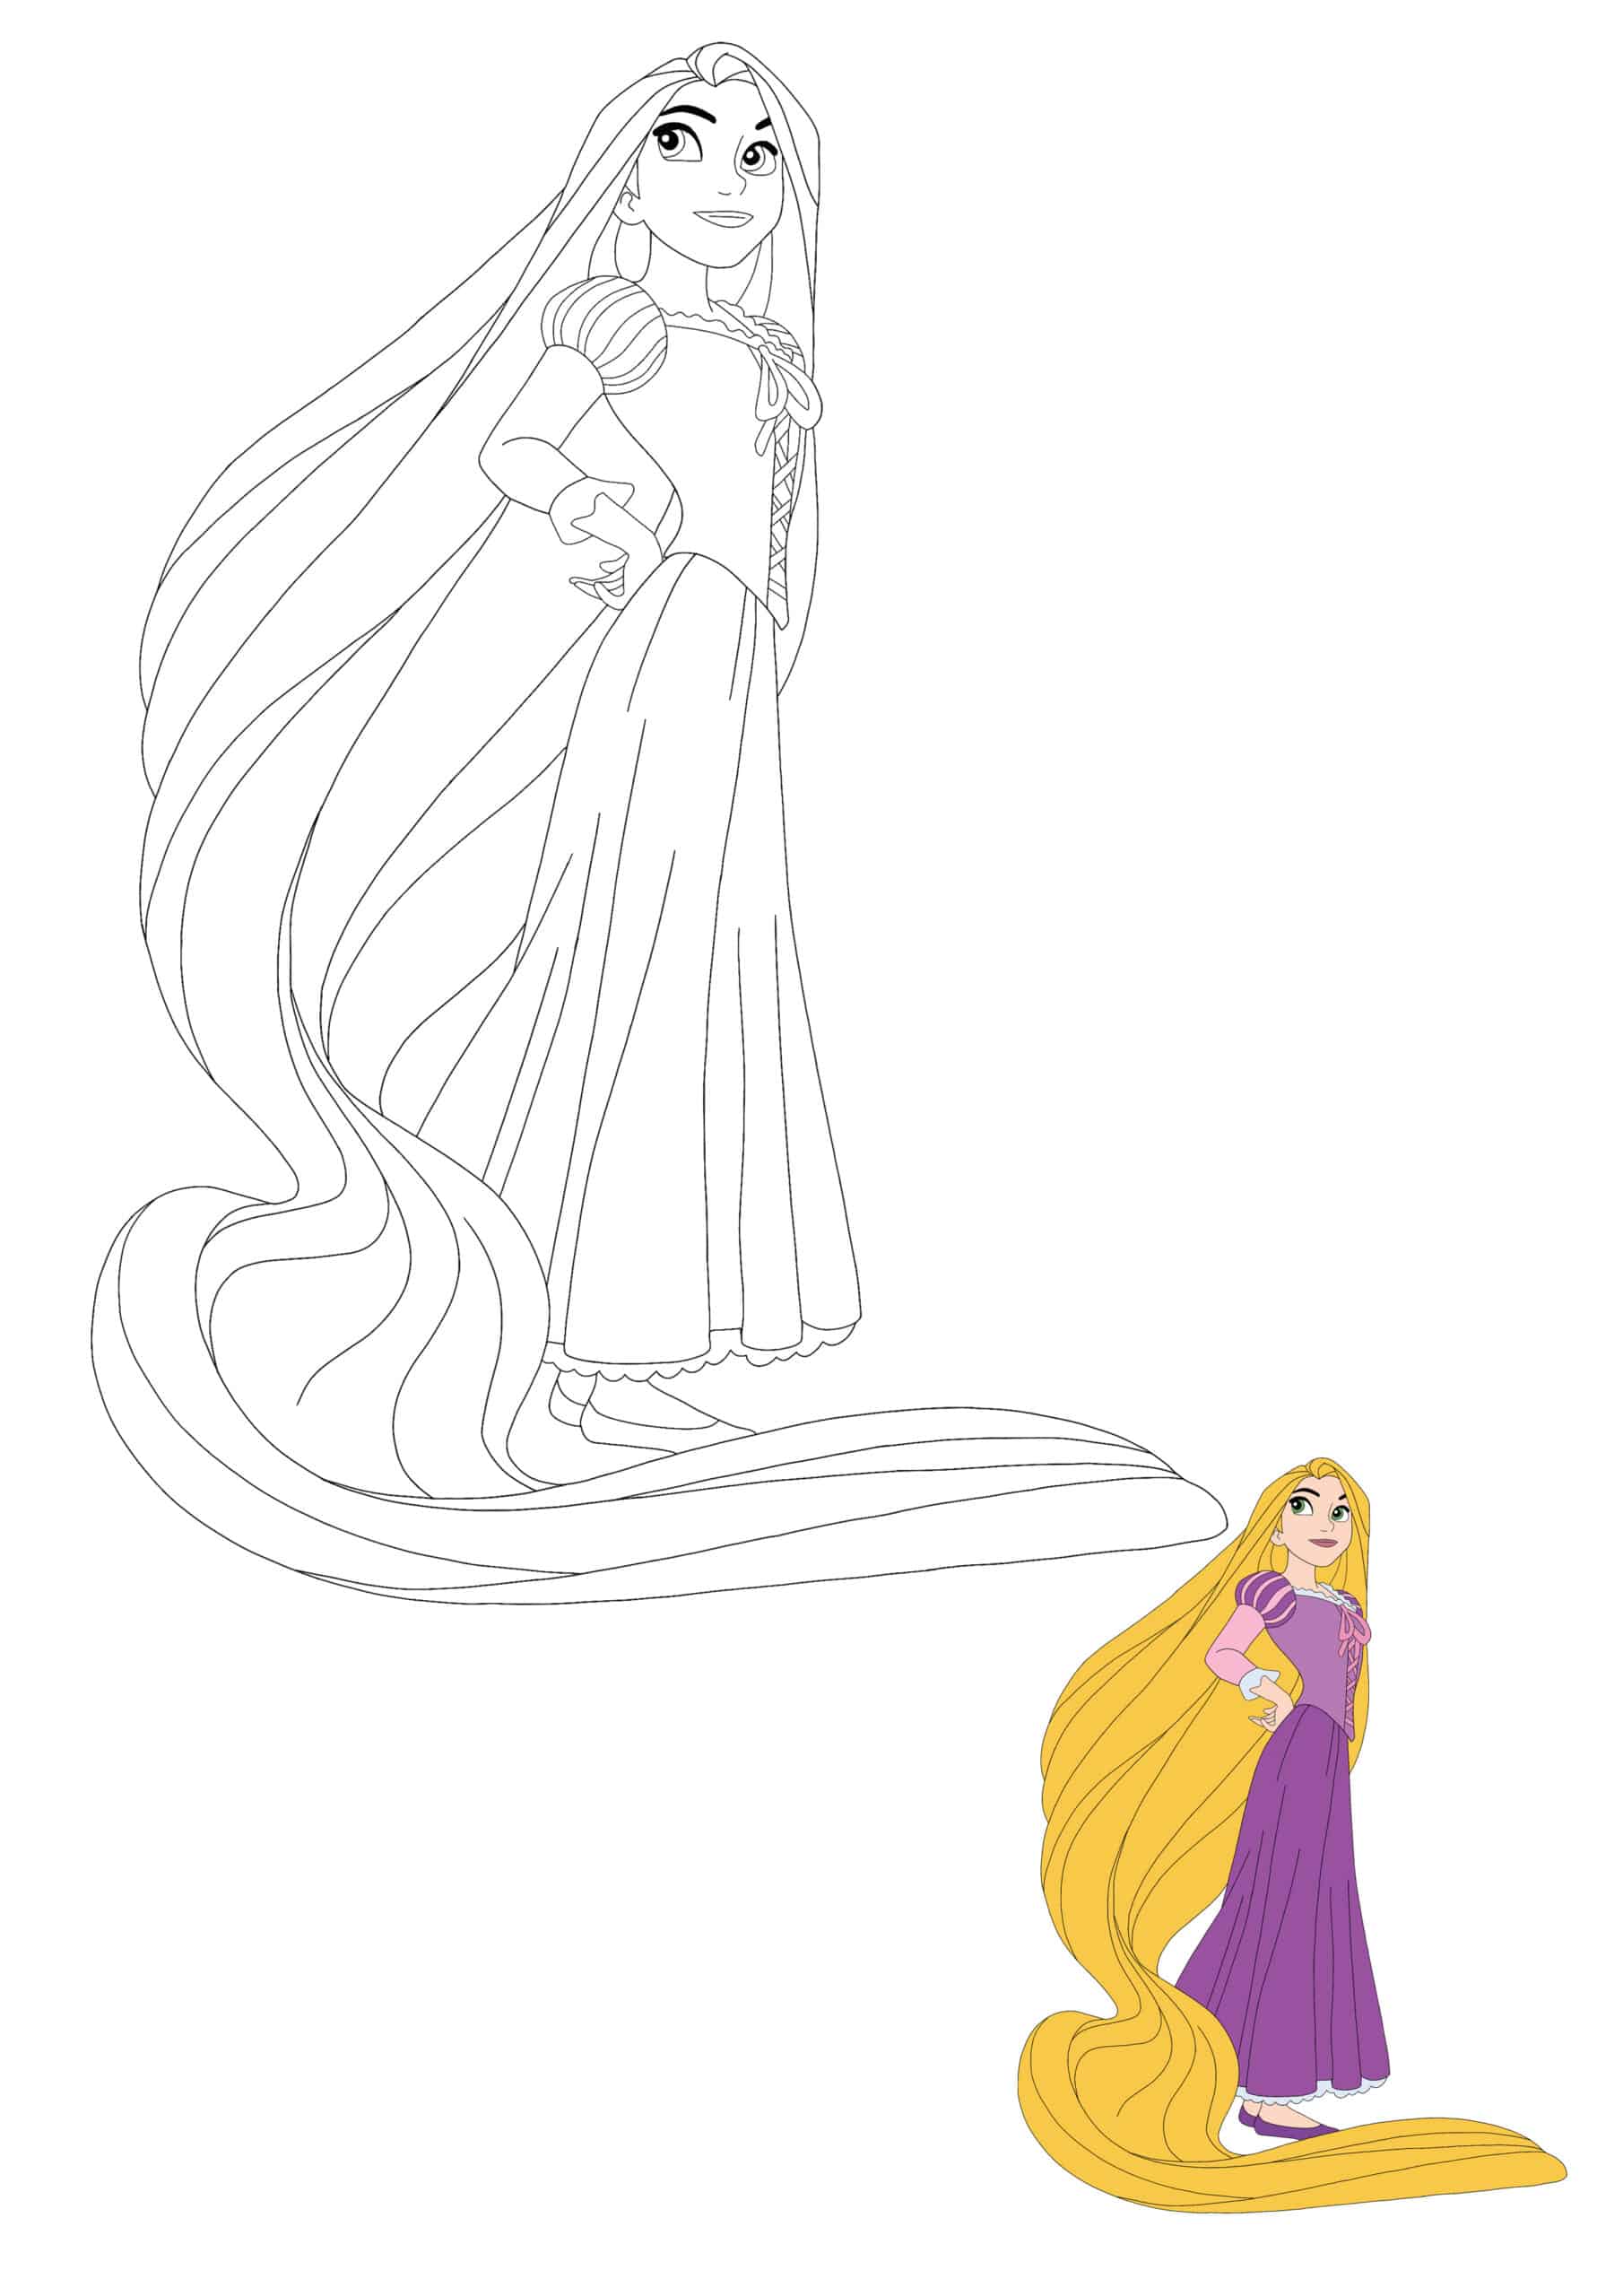 Disney Princess Rapunzel Coloring Pages   Coloring Cool